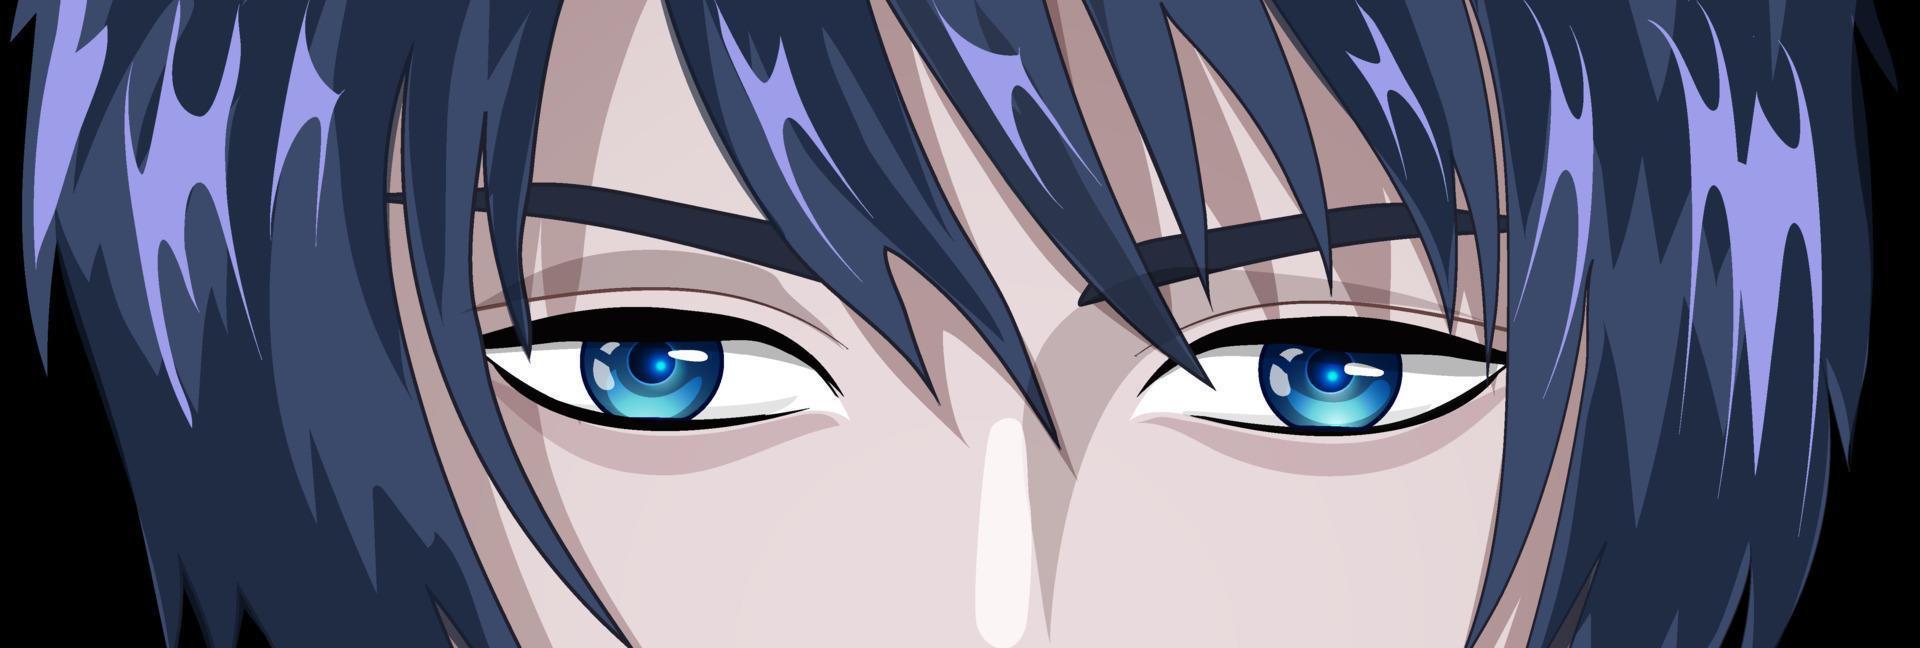 joven con ojos azules al estilo de manga y anime. 15619123 Vector en  Vecteezy